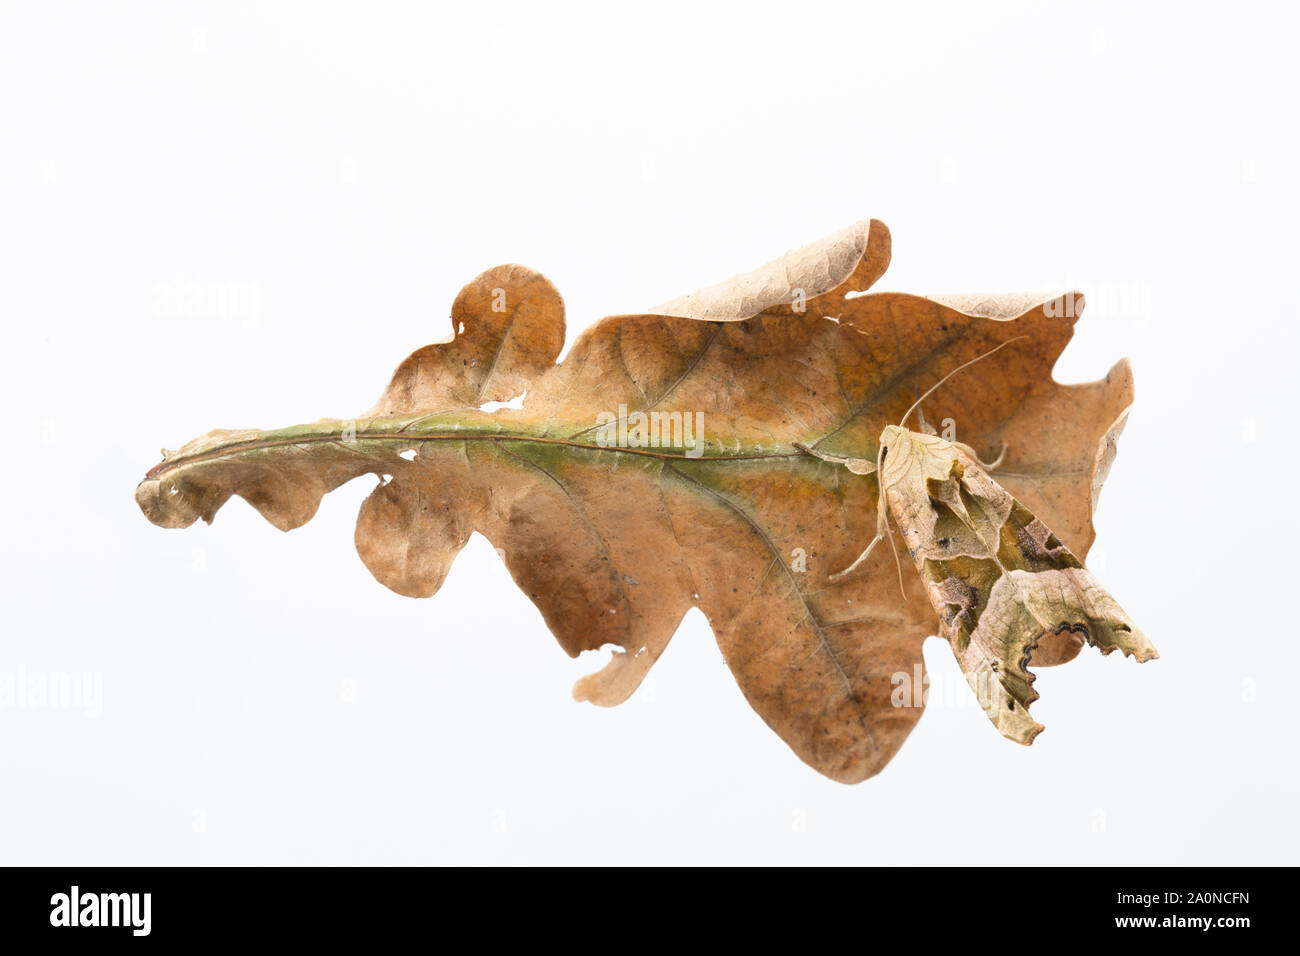 Ein Winkel, Phlogophora meticulosa Schattierungen Motte, gegen einen toten Eichenlaub getarnt. Studio Bild auf einem weißen Hintergrund. North Dorset England UK GB Stockfoto